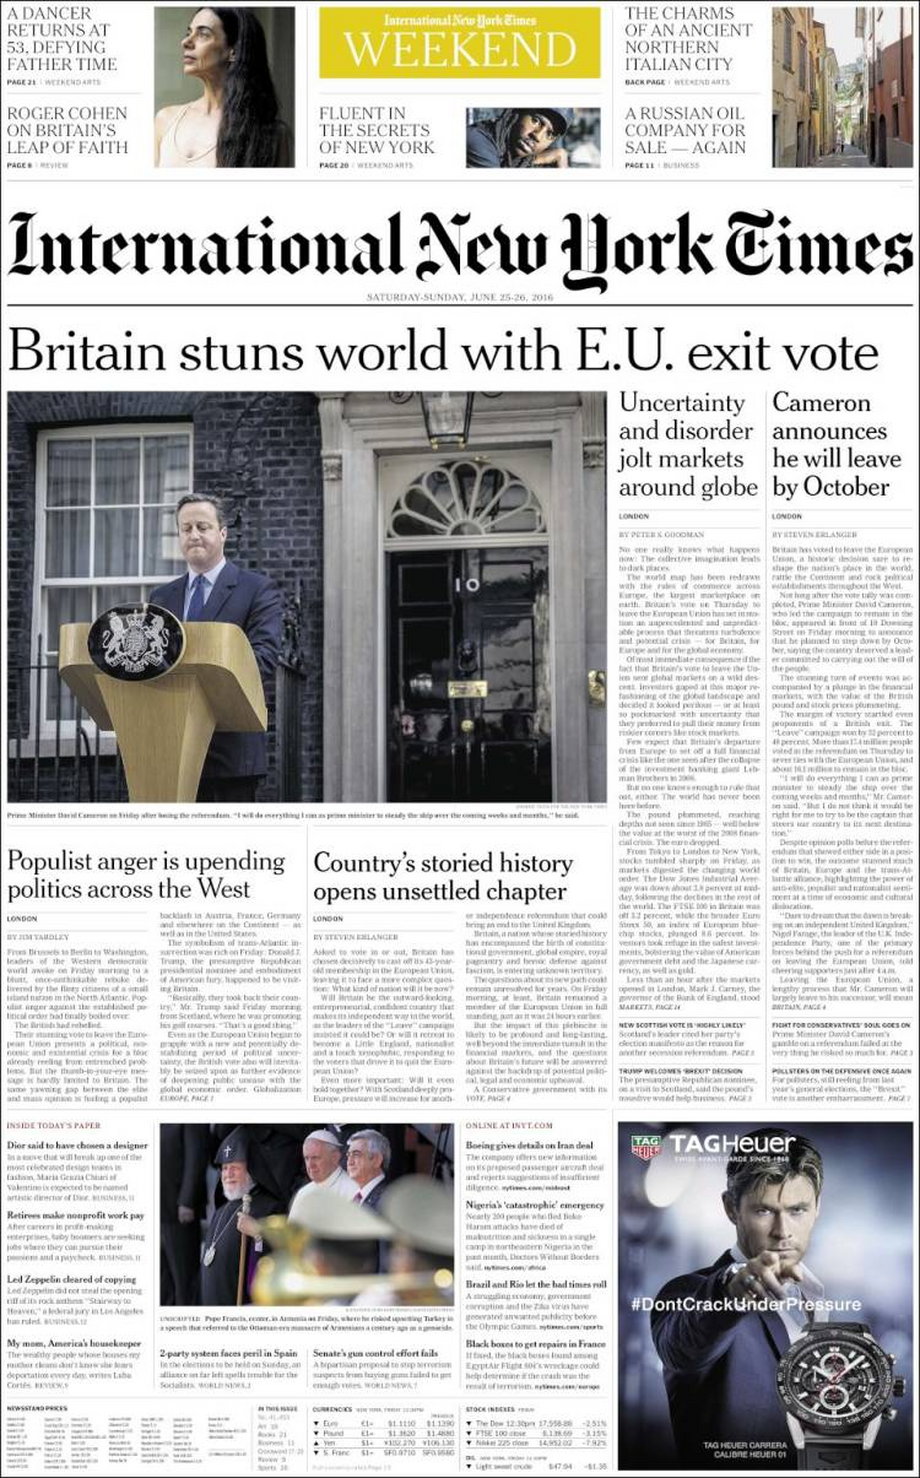 International New York Times: "Brytania oszołomiła świat głosowaniem za wyjściem z Unii Europejskiej"